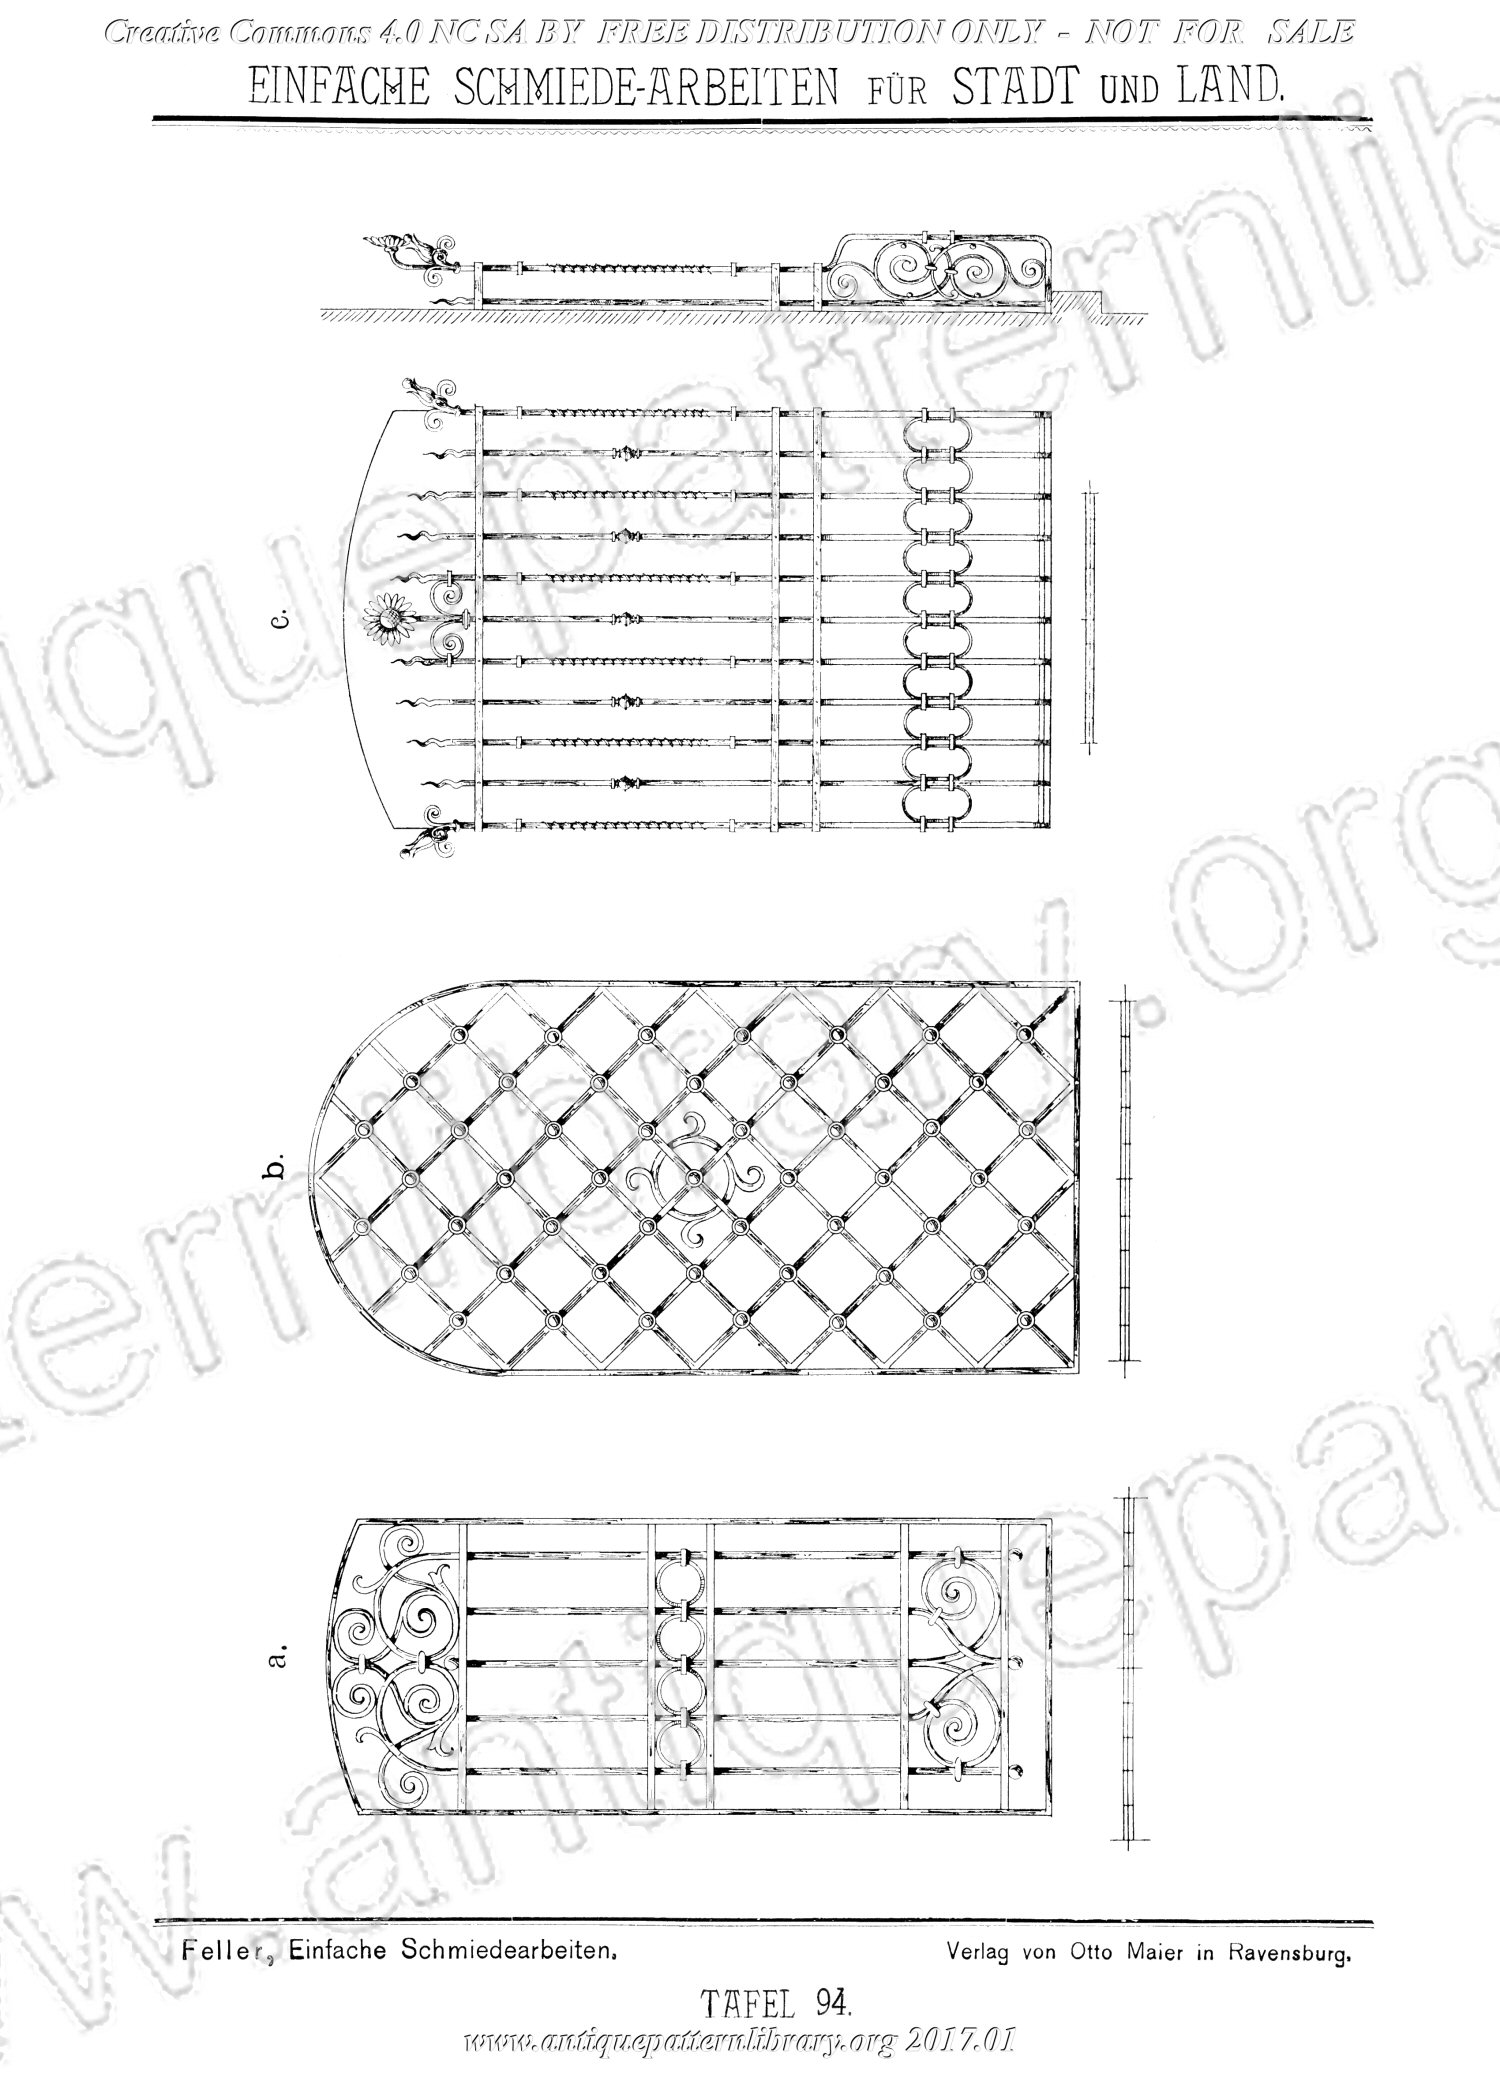 H-AB001 Musterbuch enthaltend Einfache Schmiede-Arbeiten